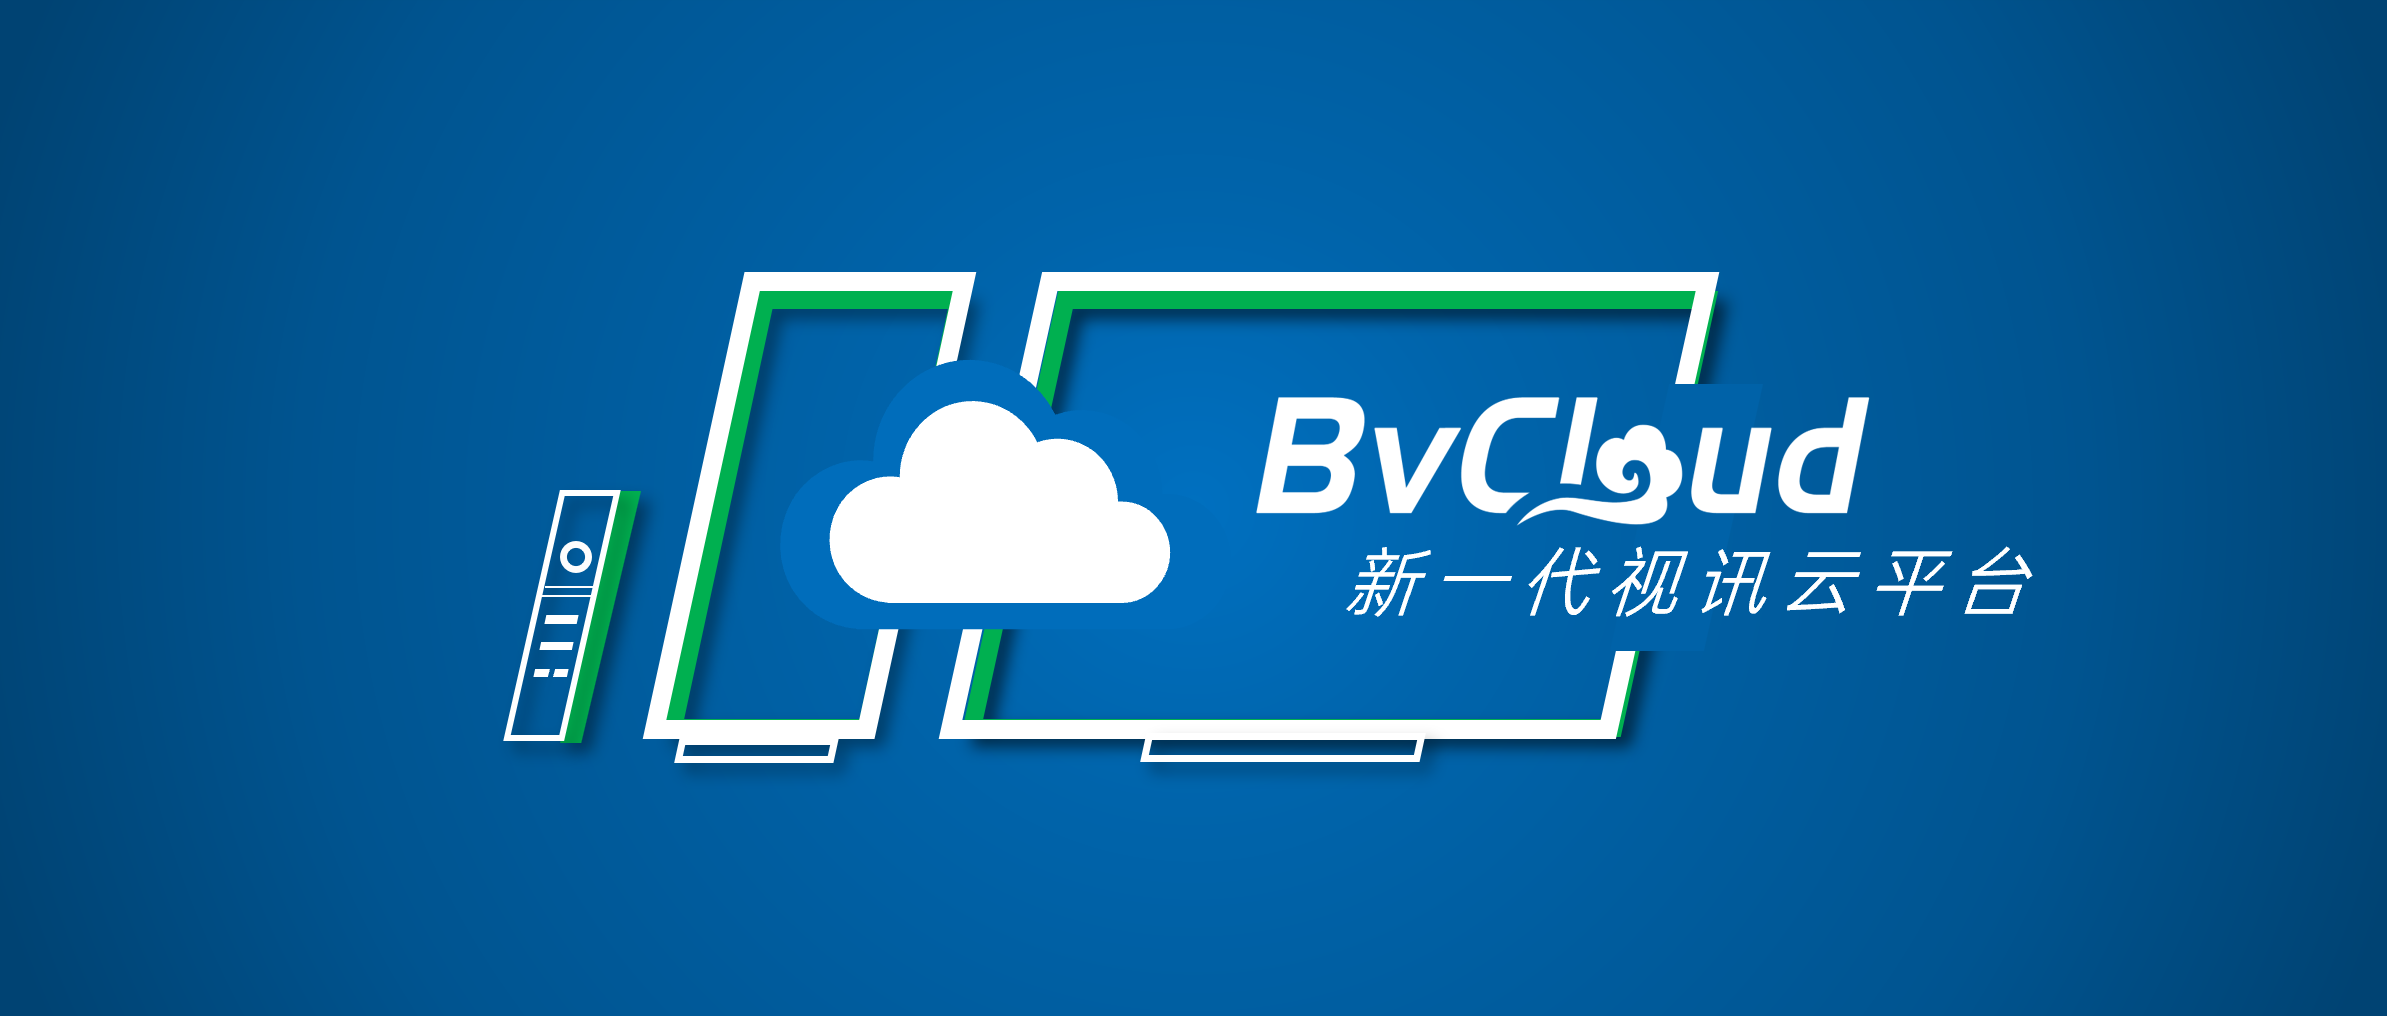 岭博科技发布BVCloud视讯云平台